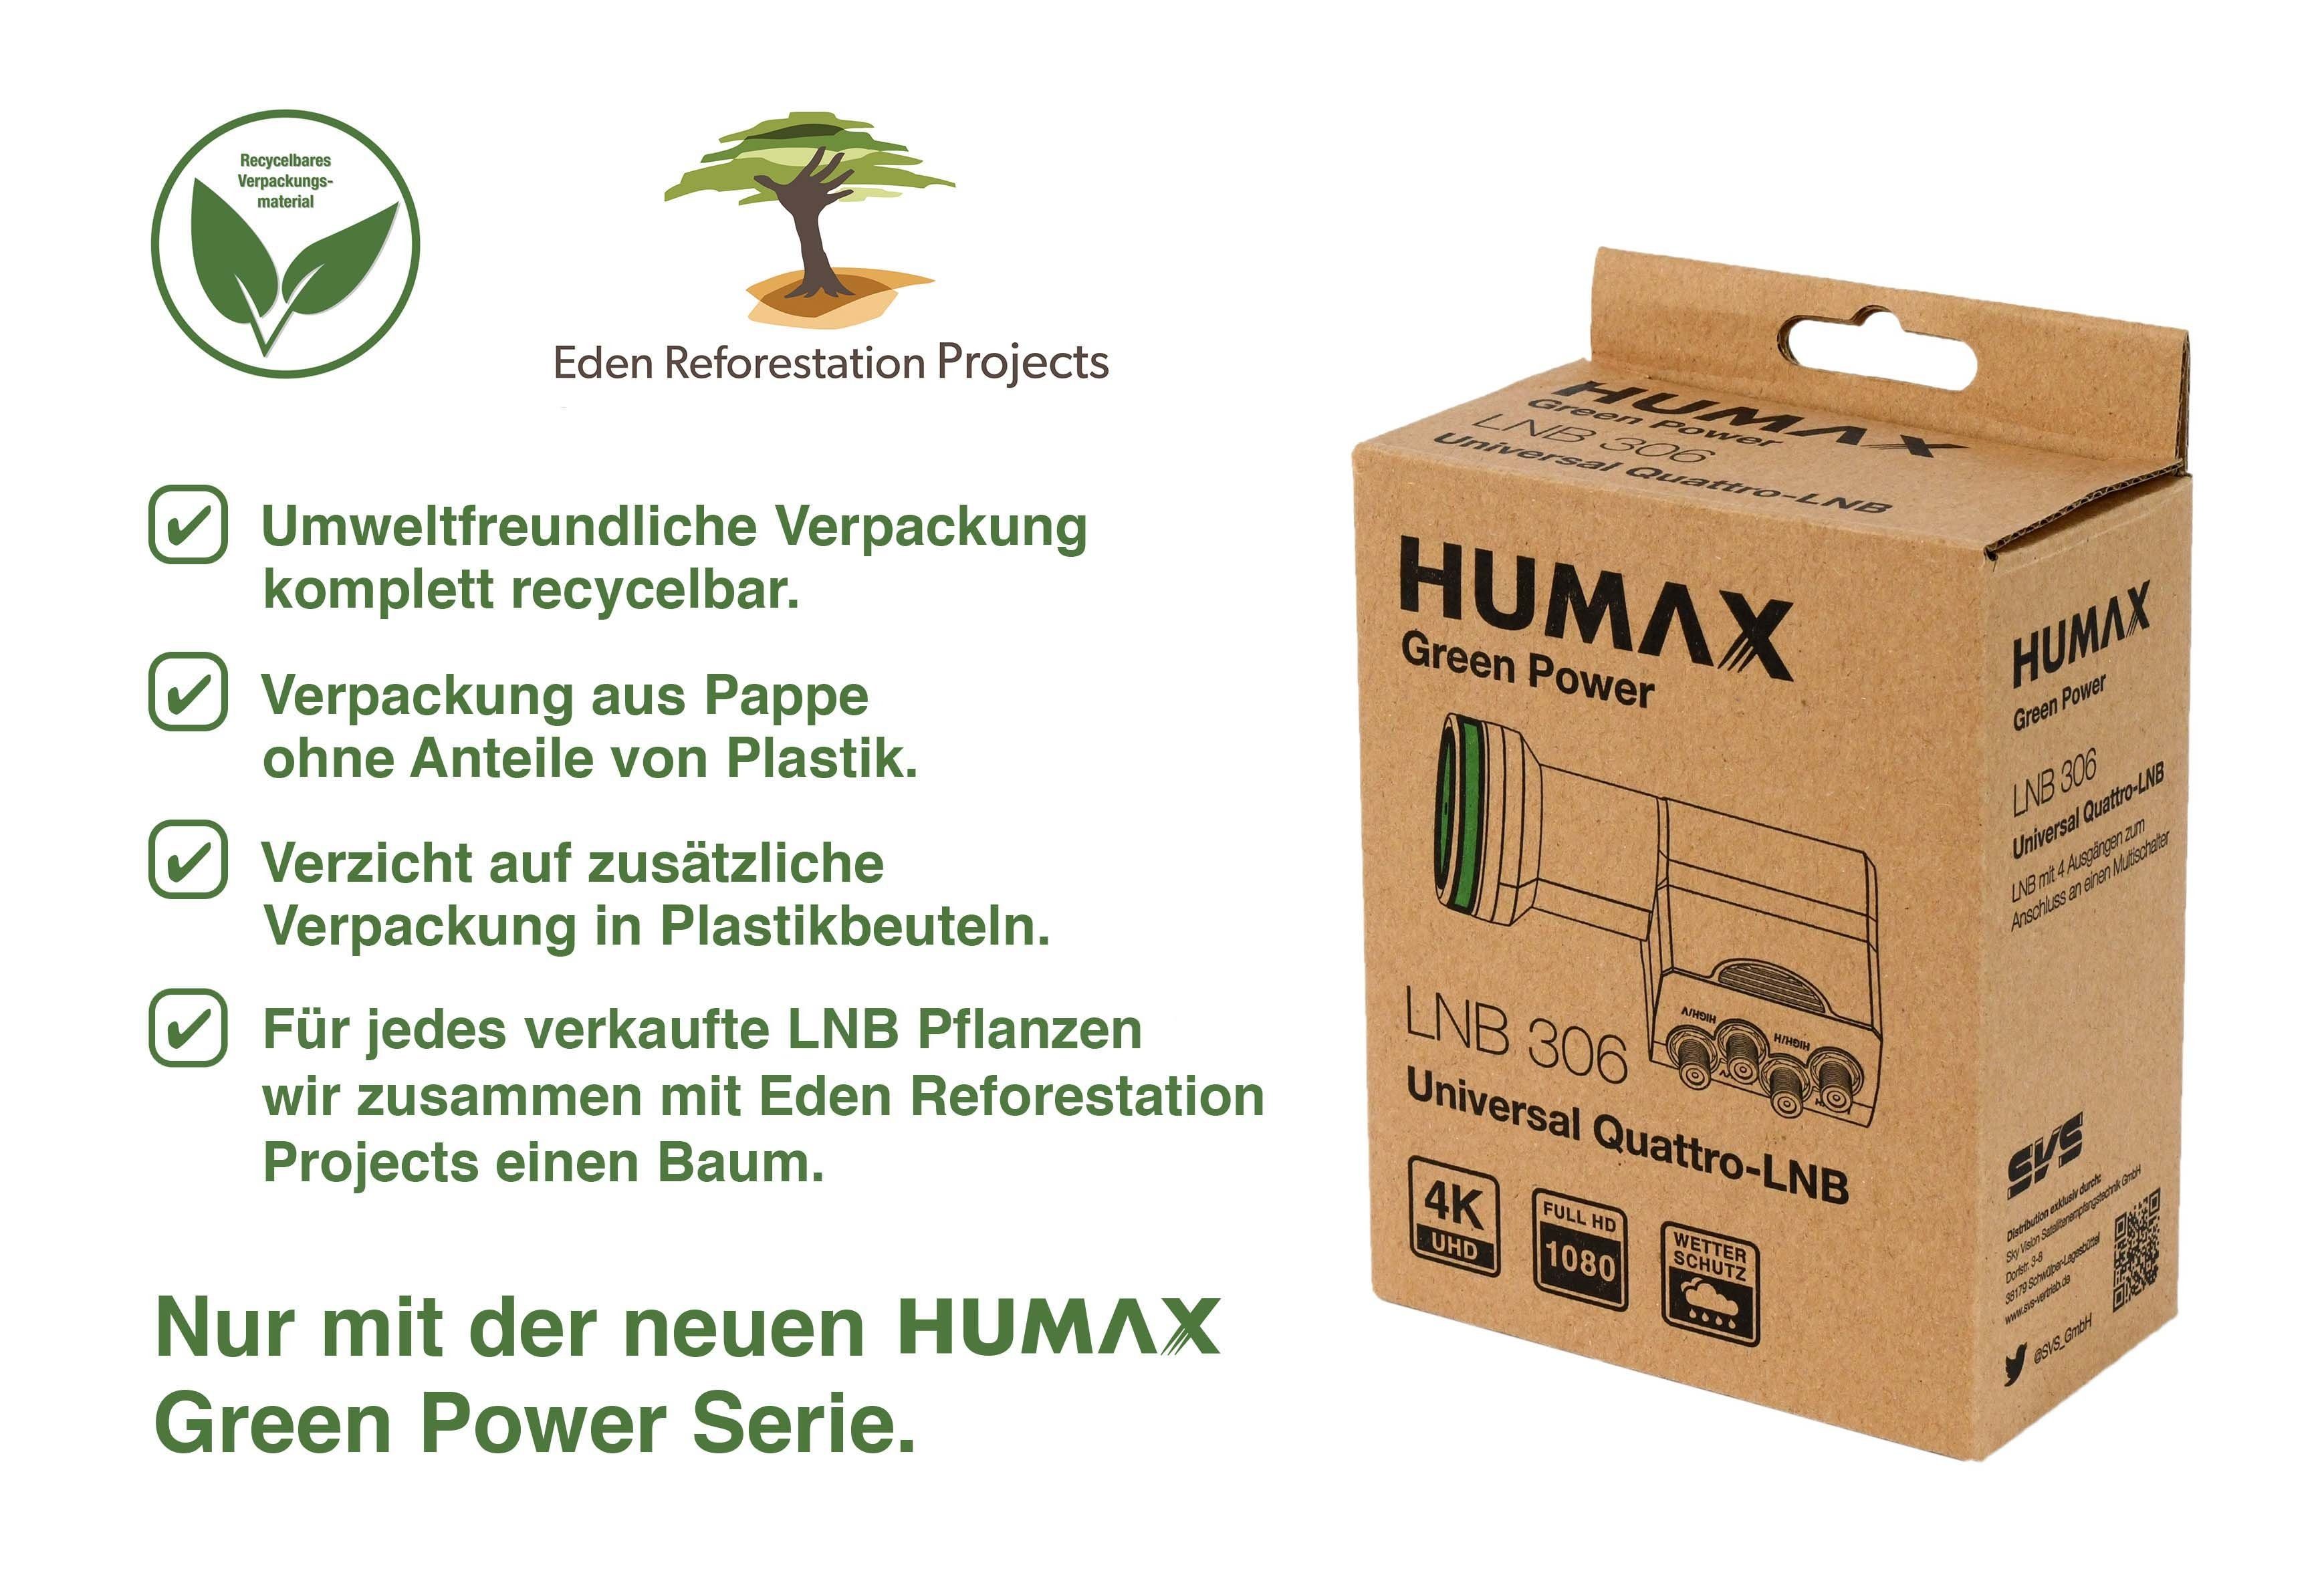 Humax Green Power Quattro-LNB 306, stromsparend (für Umweltfreundliche Multischalter, Verpackung) Universal-Quattro-LNB